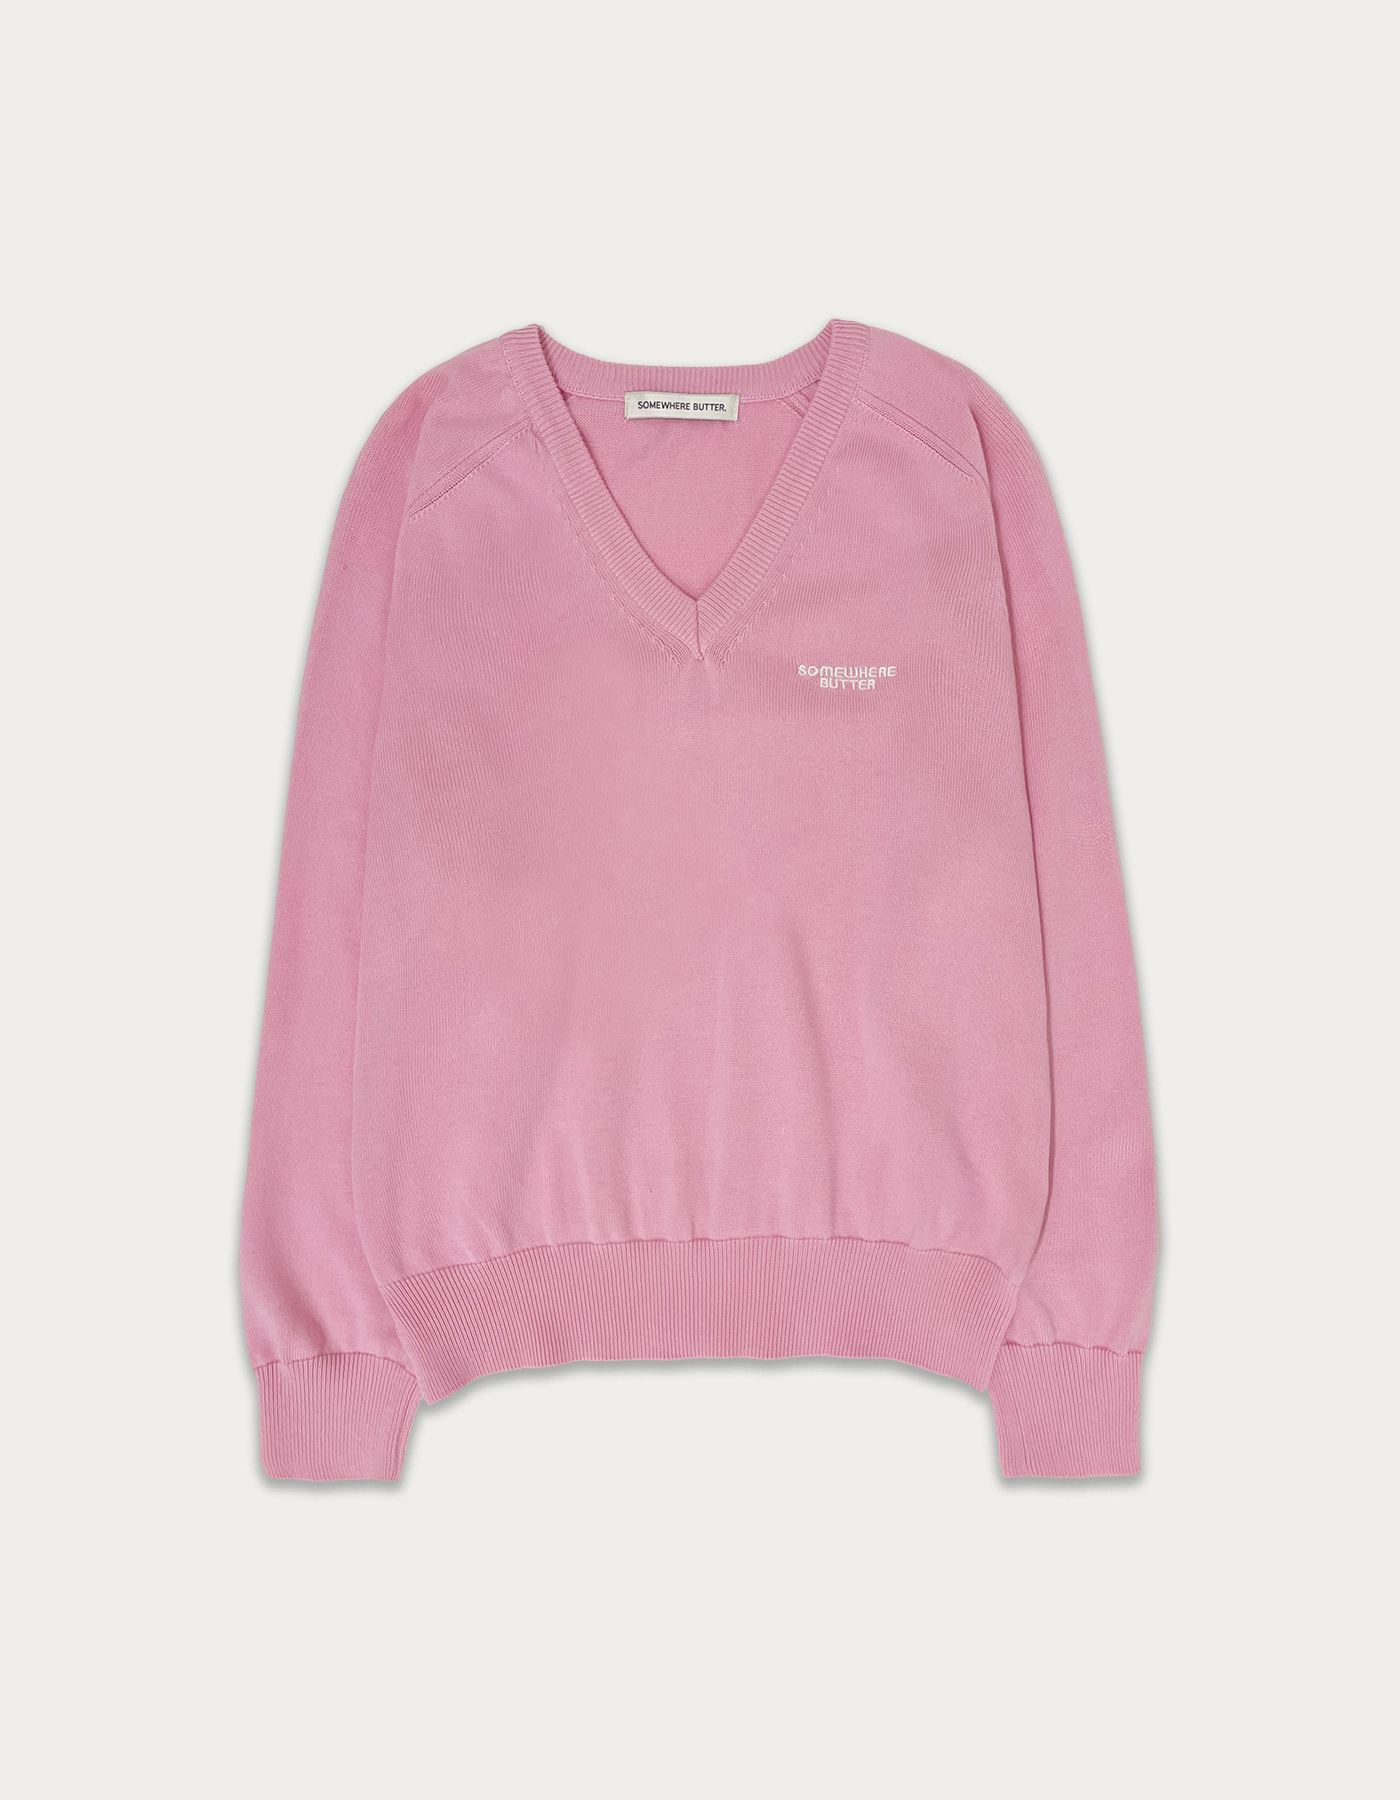 Classy logo cotton v-neck knit - pink